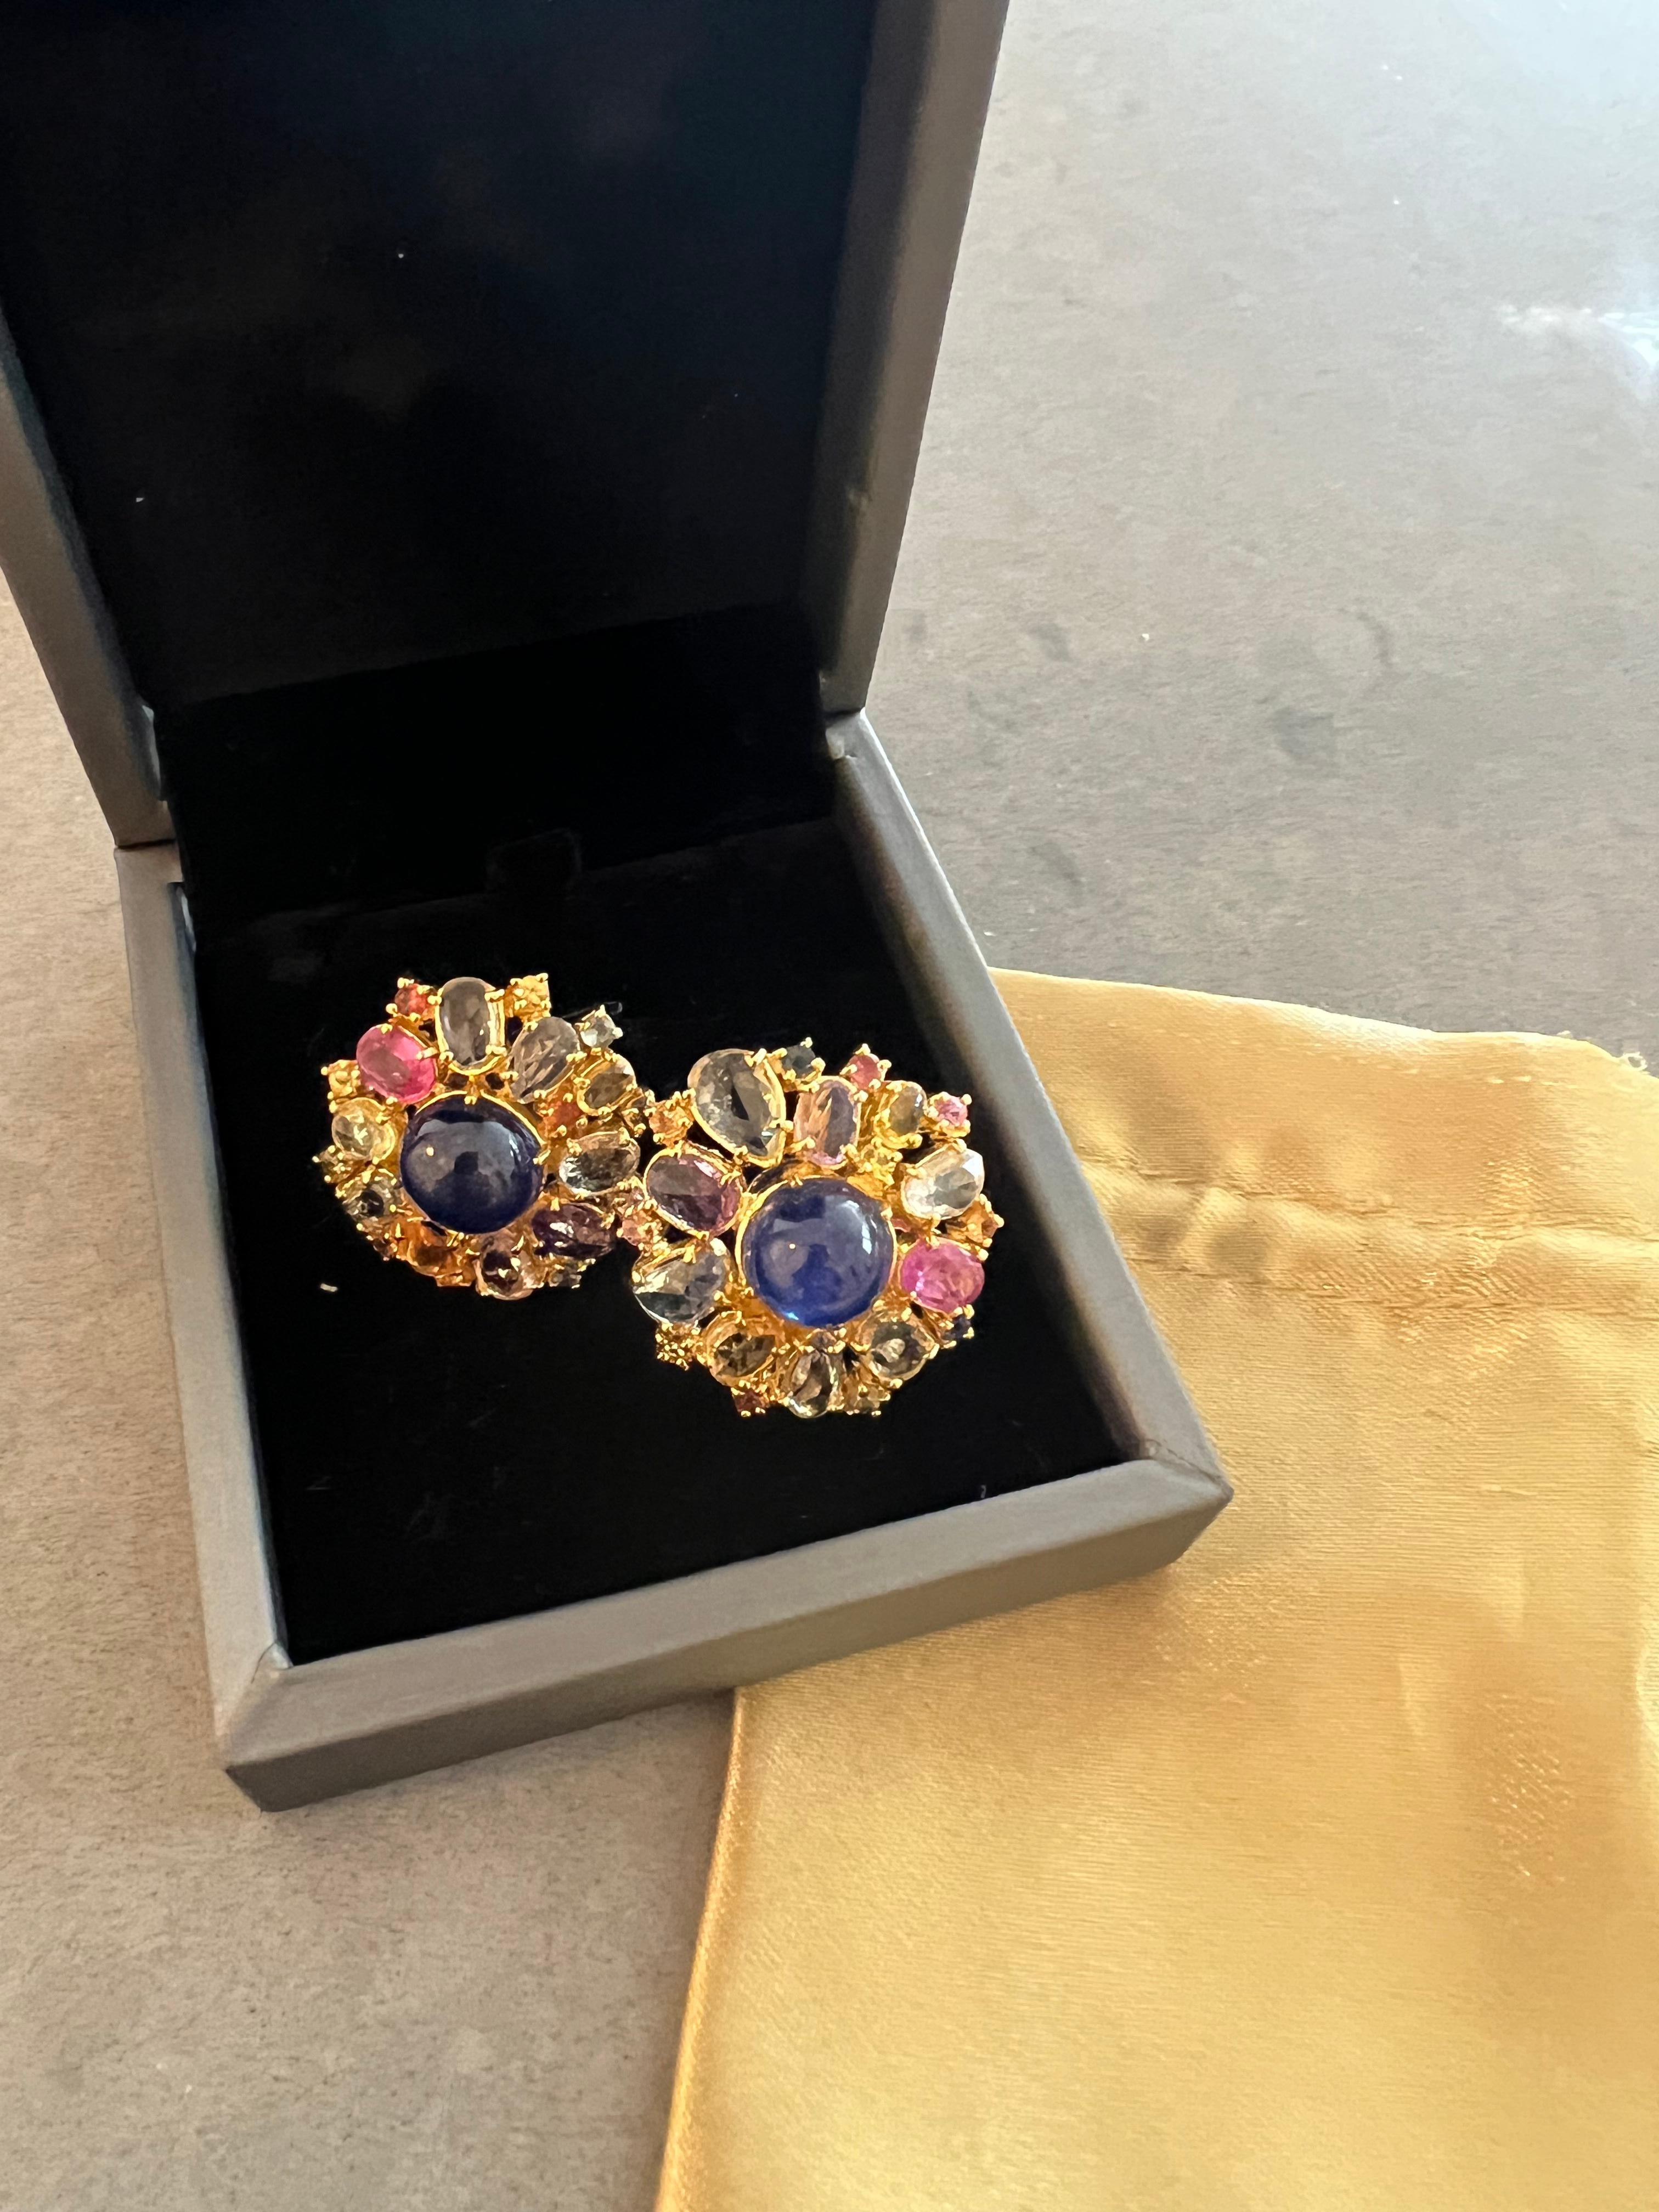 Bochic “Capri” Ruby & Rose Cut Sapphire Earrings Set in 18k Gold & Silver For Sale 3